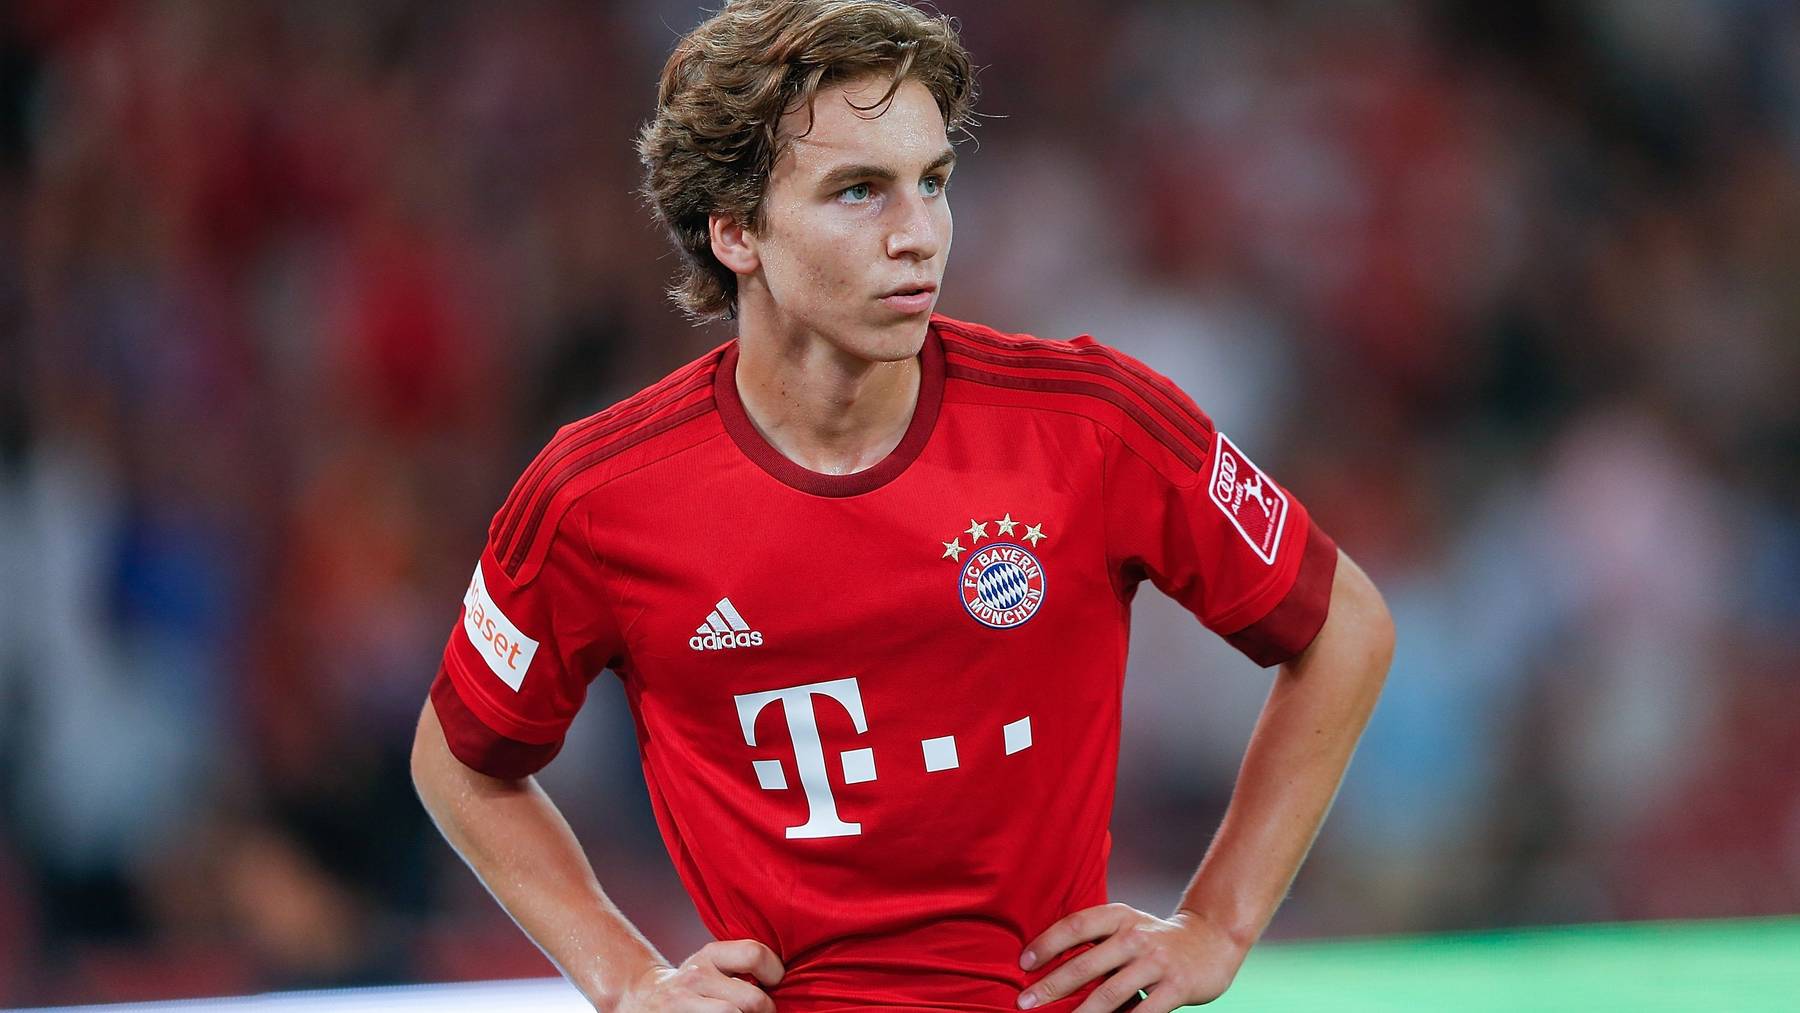 Der 19-jährige Bayern-Nachwuchsspieler unterstützt St.Gallen bis 2017.